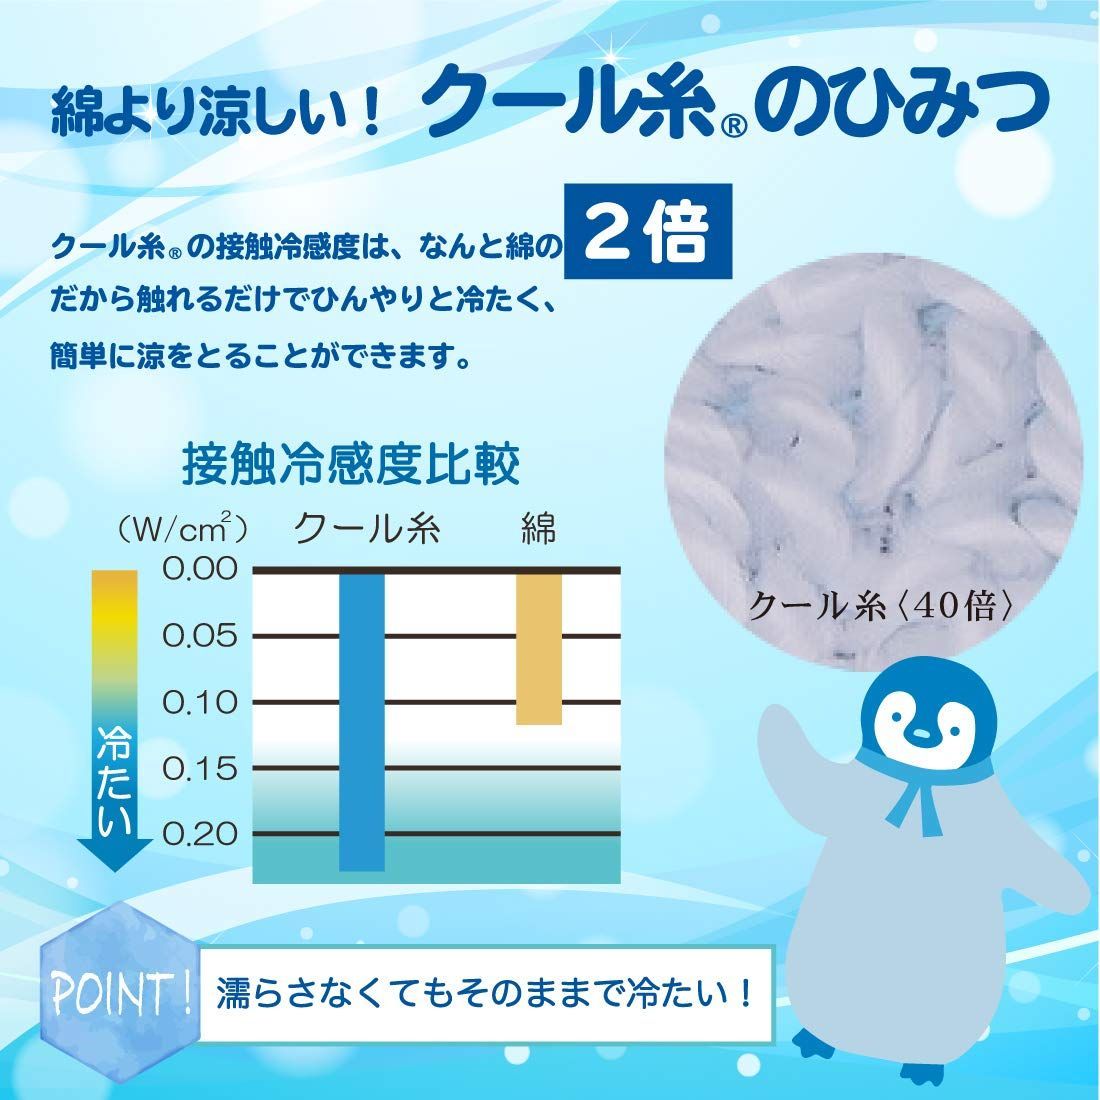 クールタオル 冷却タオル Eco de クール 濡らさなくても冷たい 約16cm